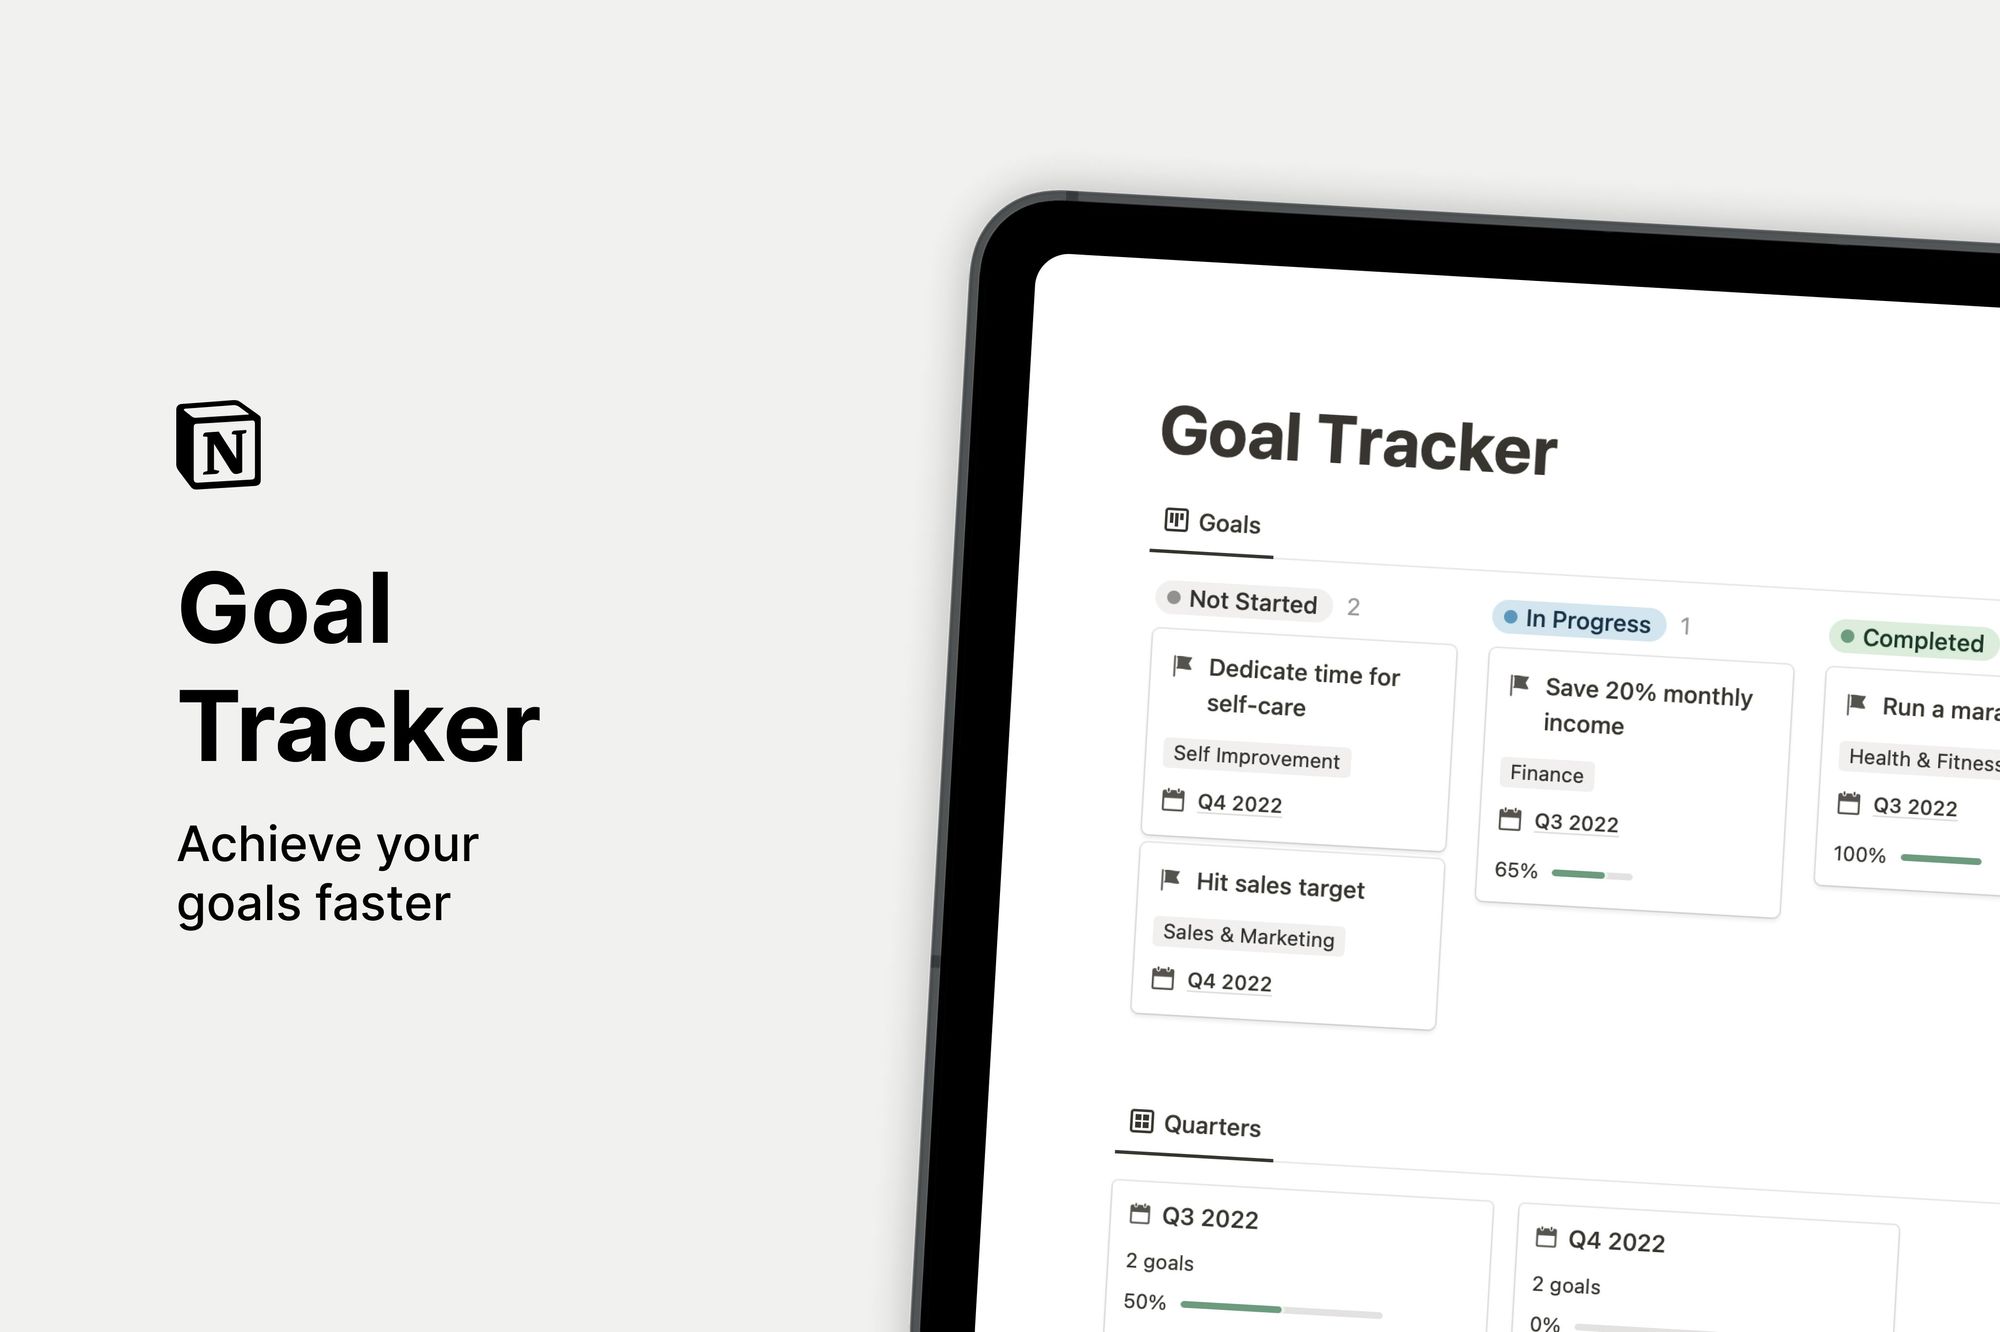 Goal Tracker